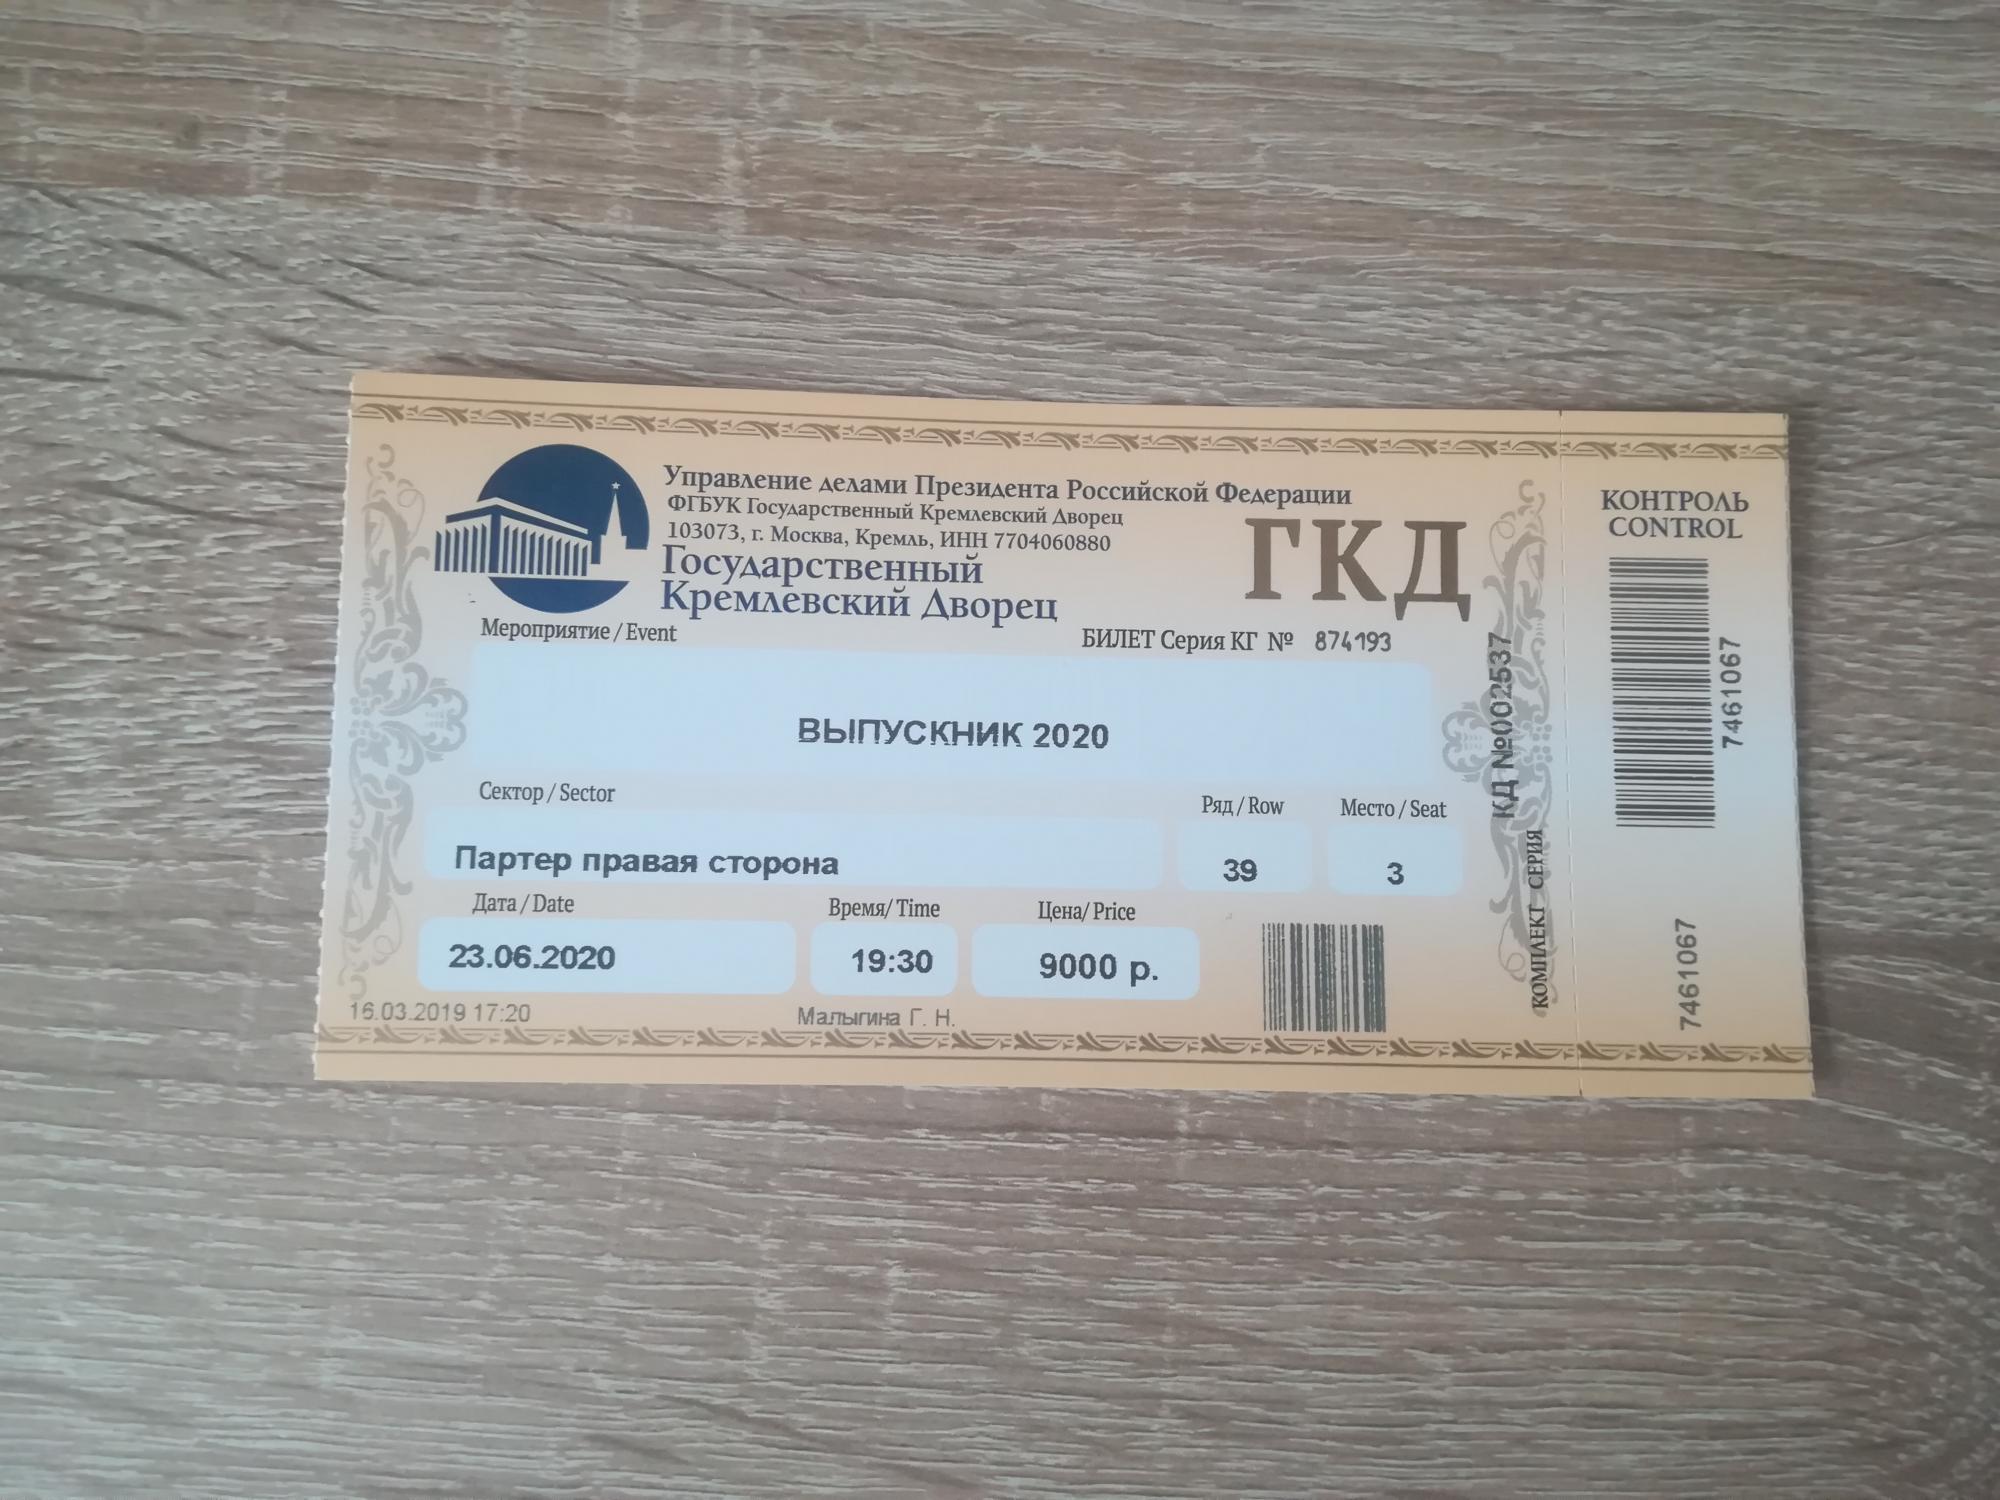 Кремлевский дворец билеты на балет. Кремлевский дворец билеты. ГКД билеты. Билеты в государственный Кремлевский дворец. Билет на выпускной в Кремле.